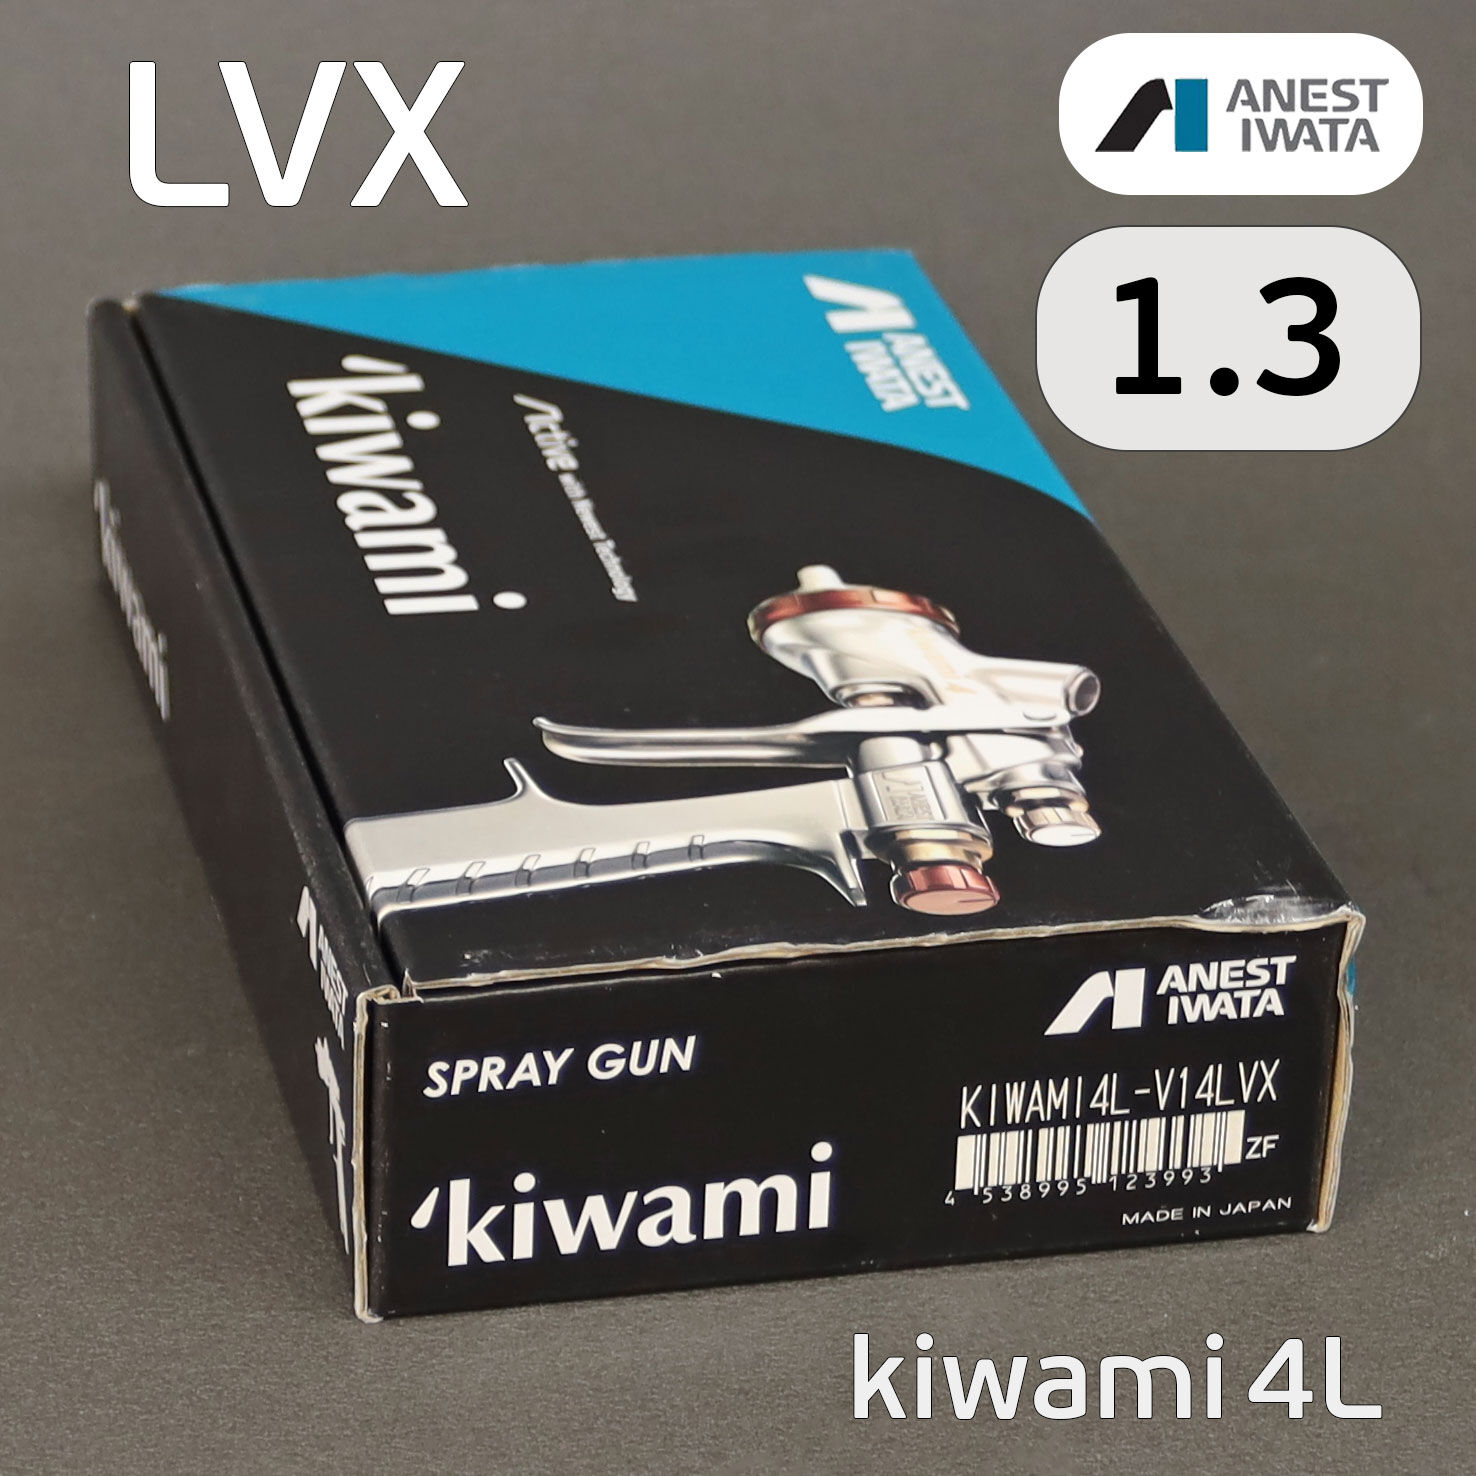 Краскопульт Anest Iwata Kiwami LVX (1.3мм) без бачка (разрезное сопло) NEW LPH-400 4